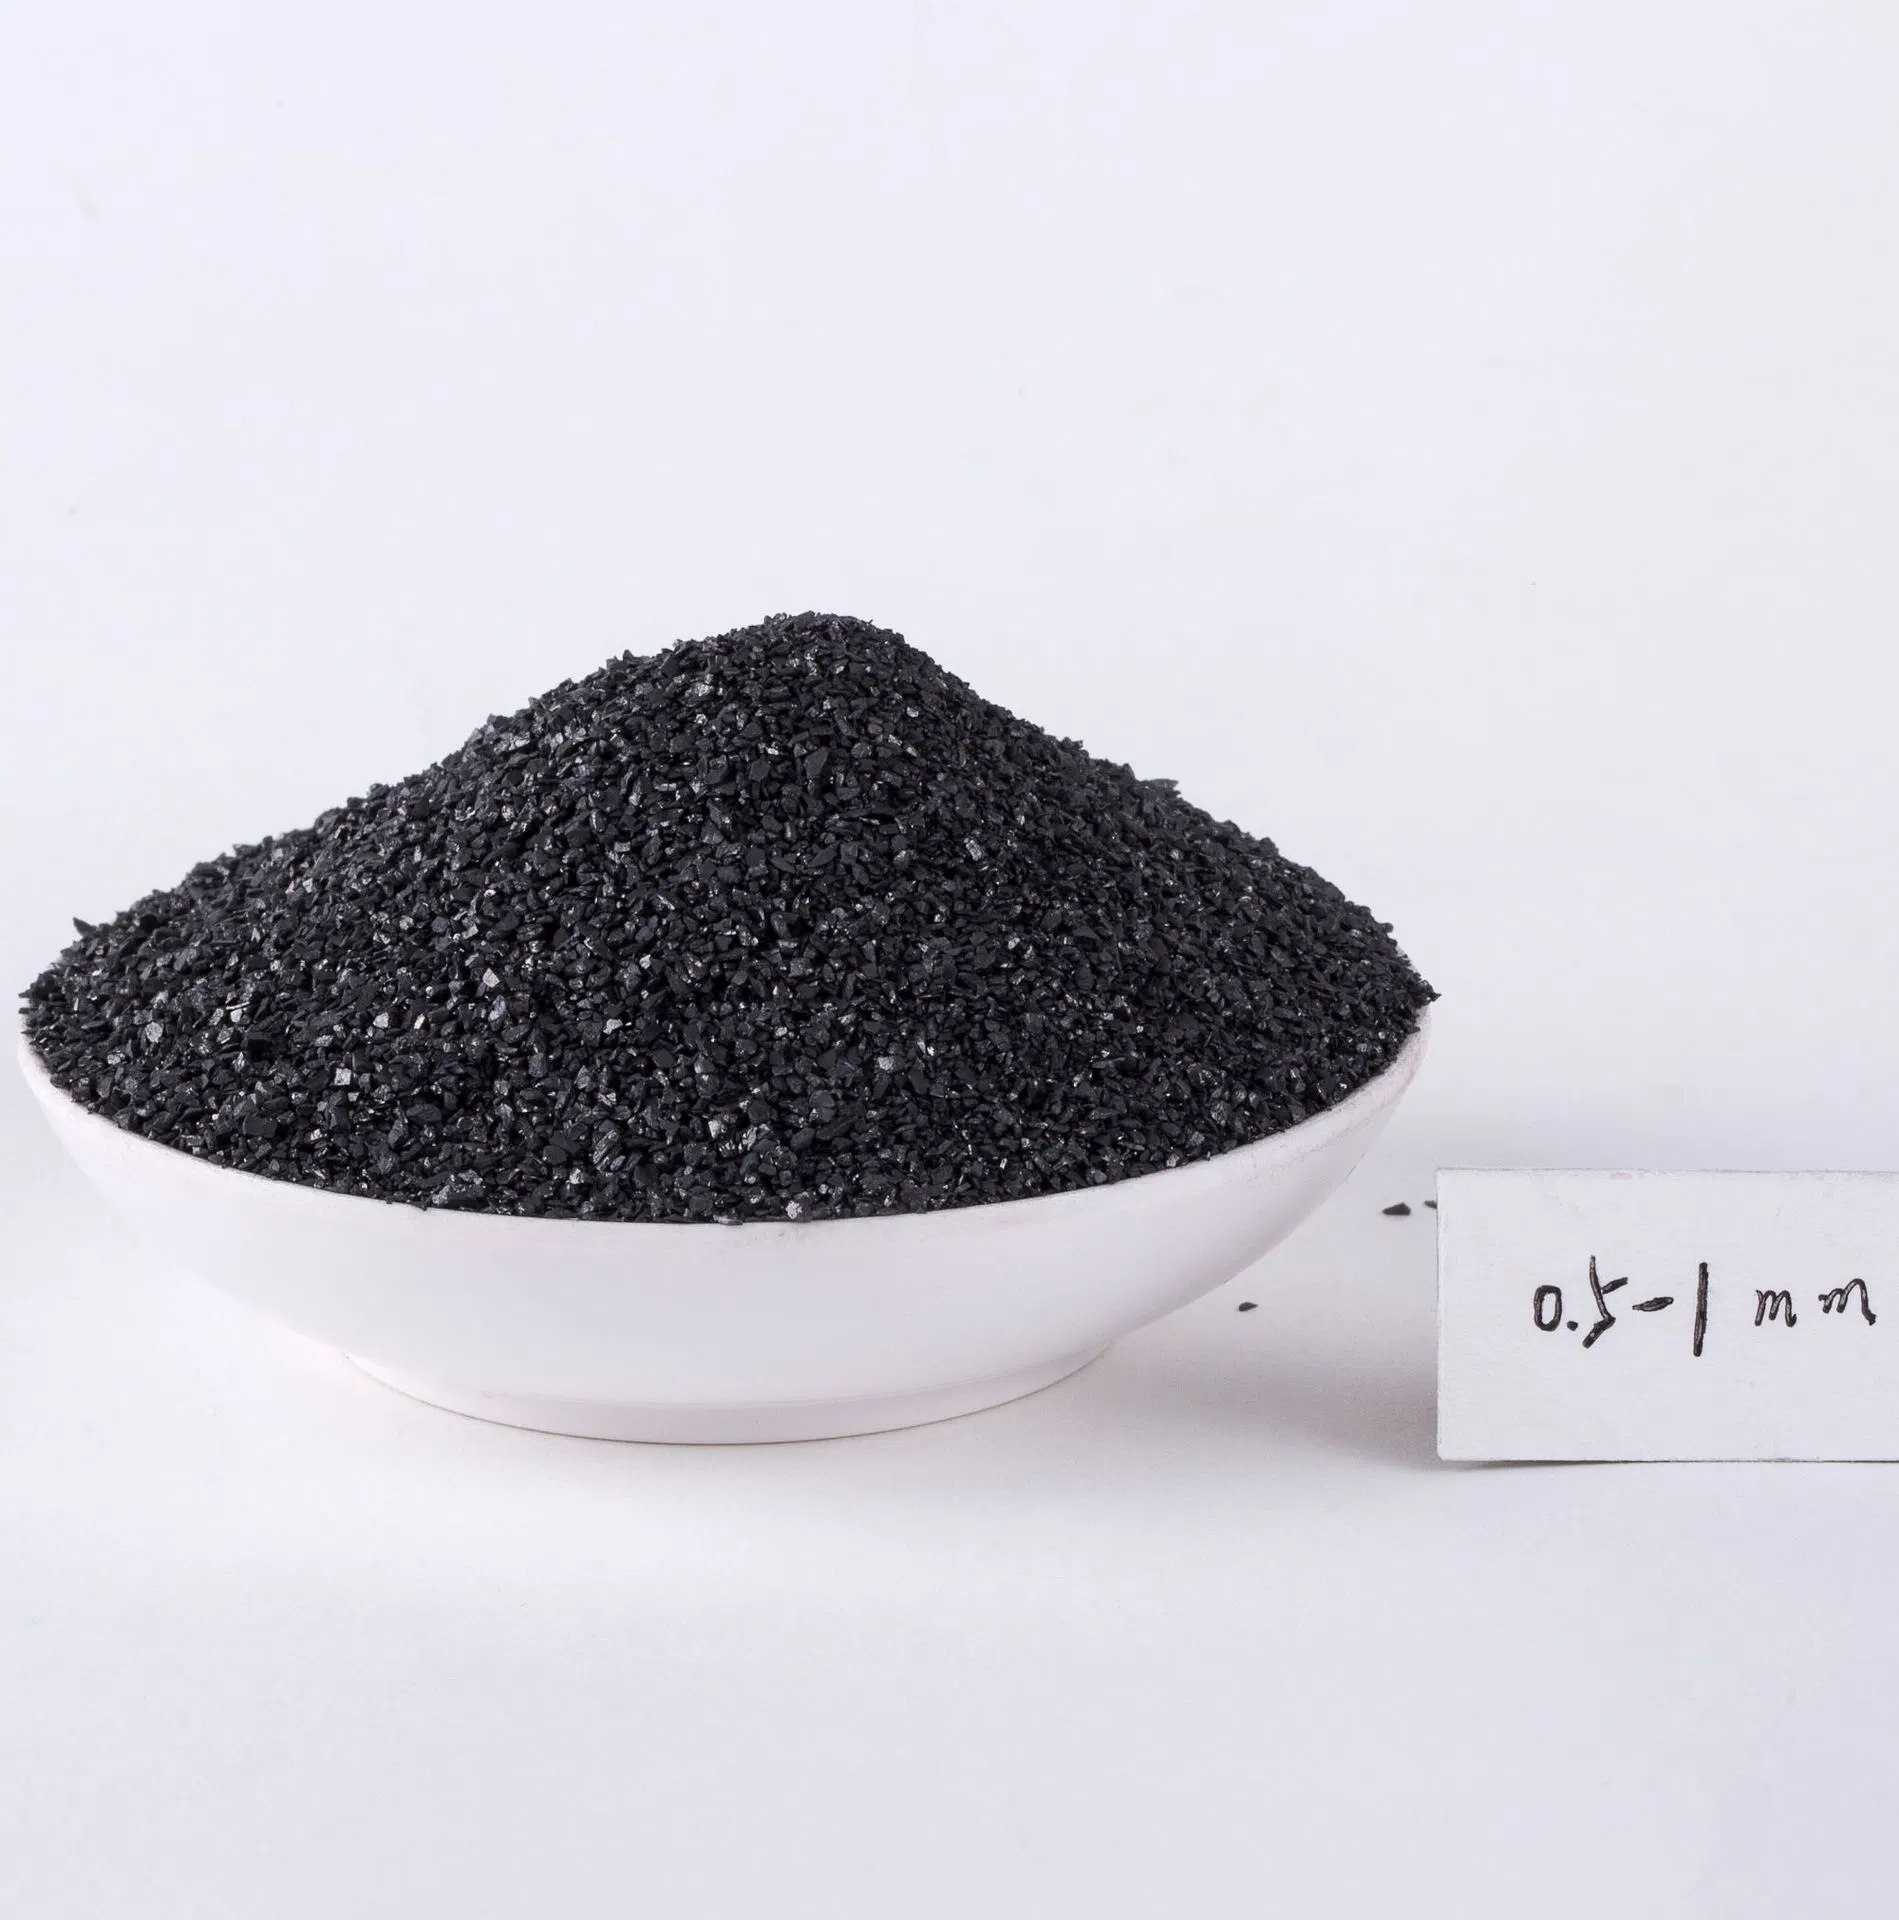 Spot Sales of Bright Black Coal Filled Black Coal High Carbon Coal Casting Coal Anthracite Coal Powder